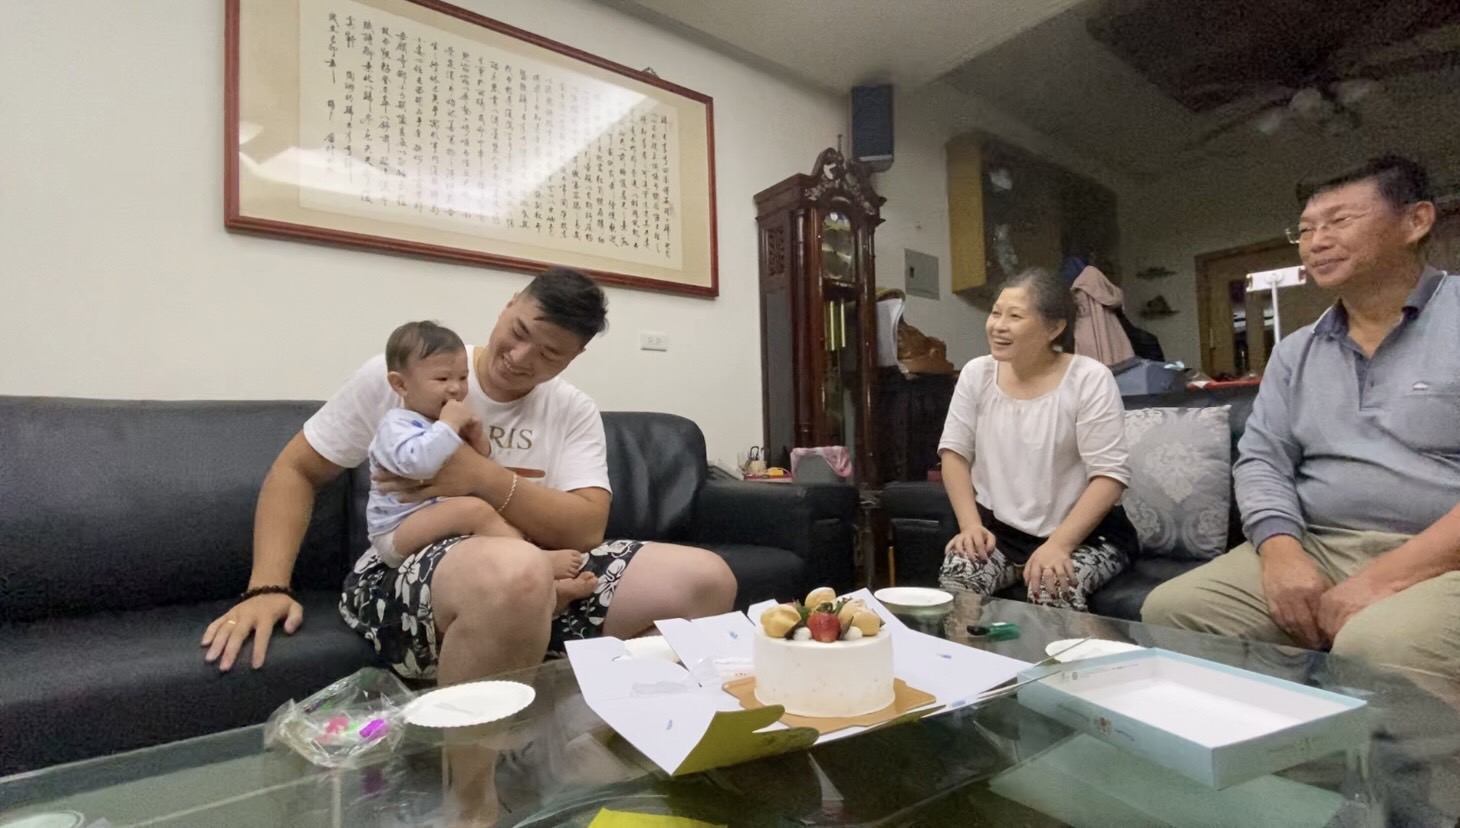 Sau khi kết hôn, cô Vương Mỹ Nga tới Đài Loan định cư và sinh sống cùng bố mẹ chồng. (Nguồn ảnh: kênh YouTube “SomethingAboutTaiwan”)